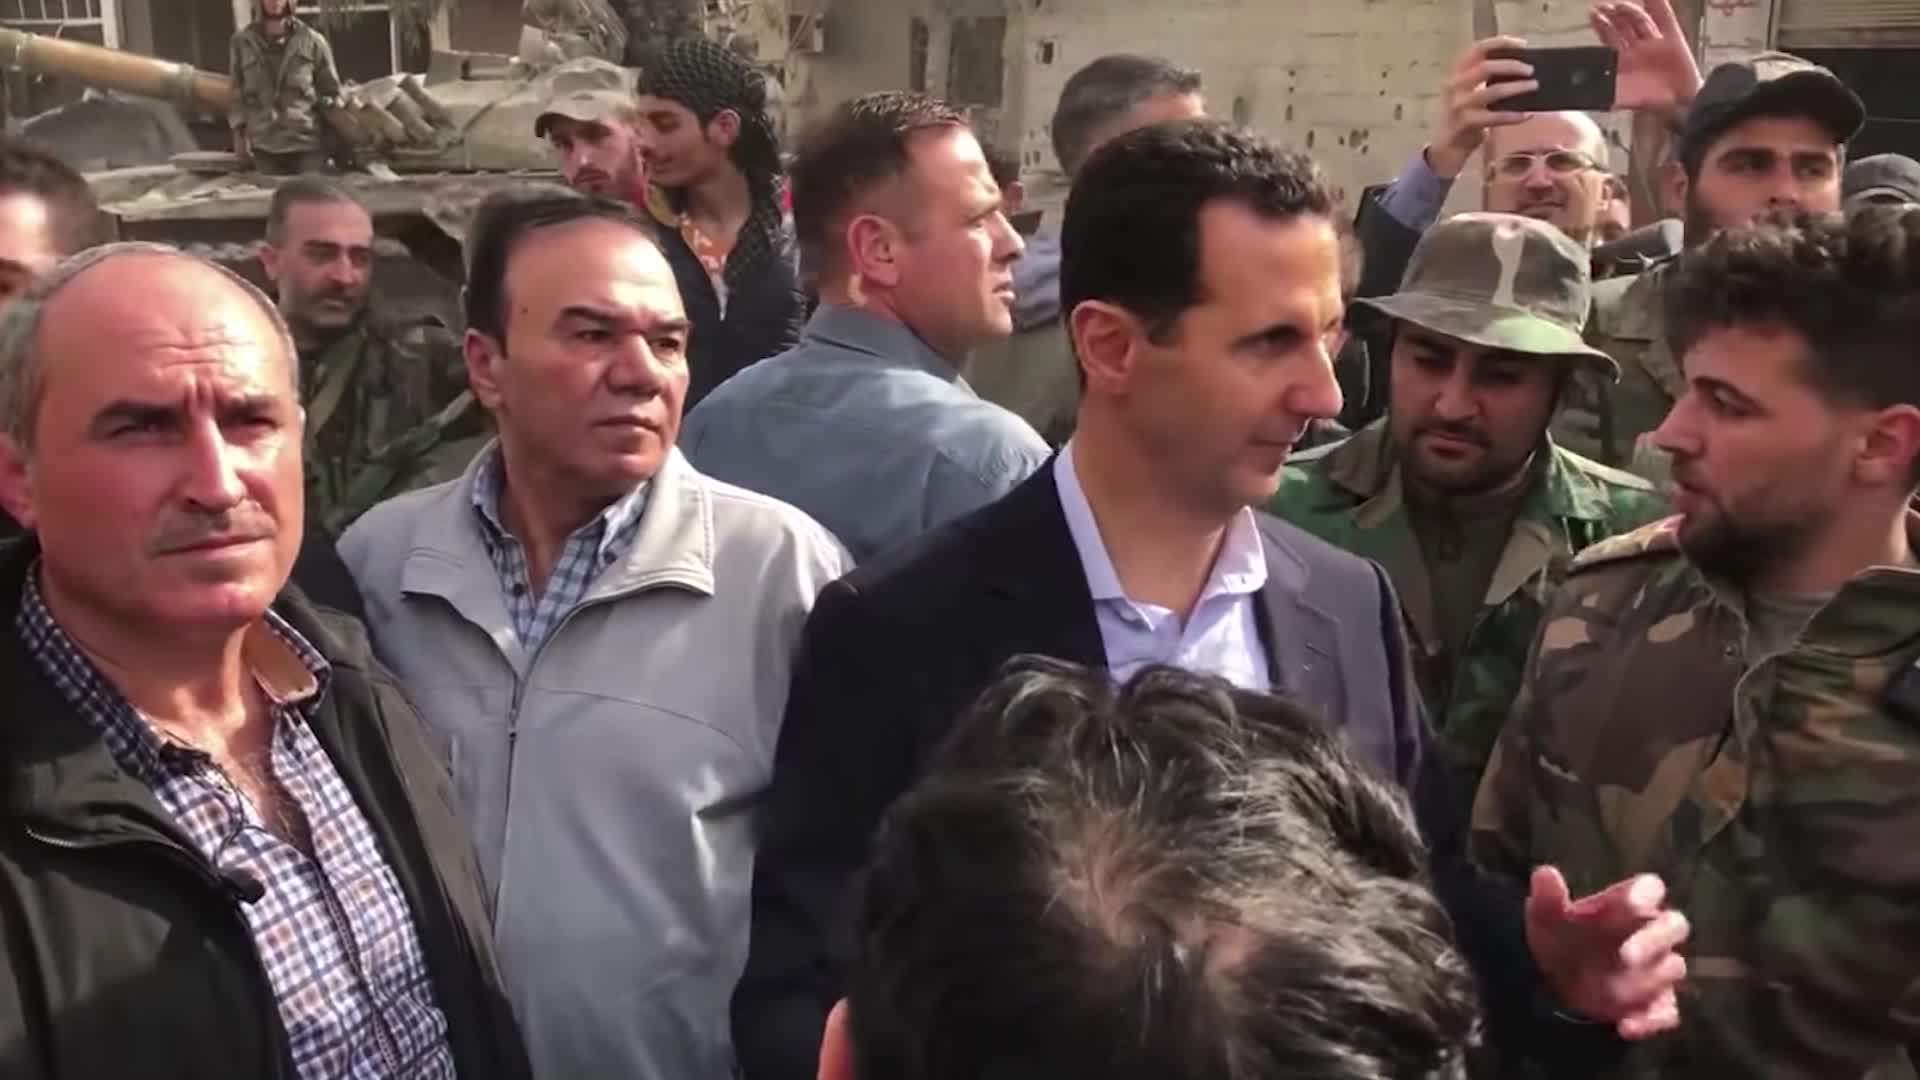 شبكة CNN داخل القبو السري.. صيادو الوثائق يلاحقون نظام الأسد